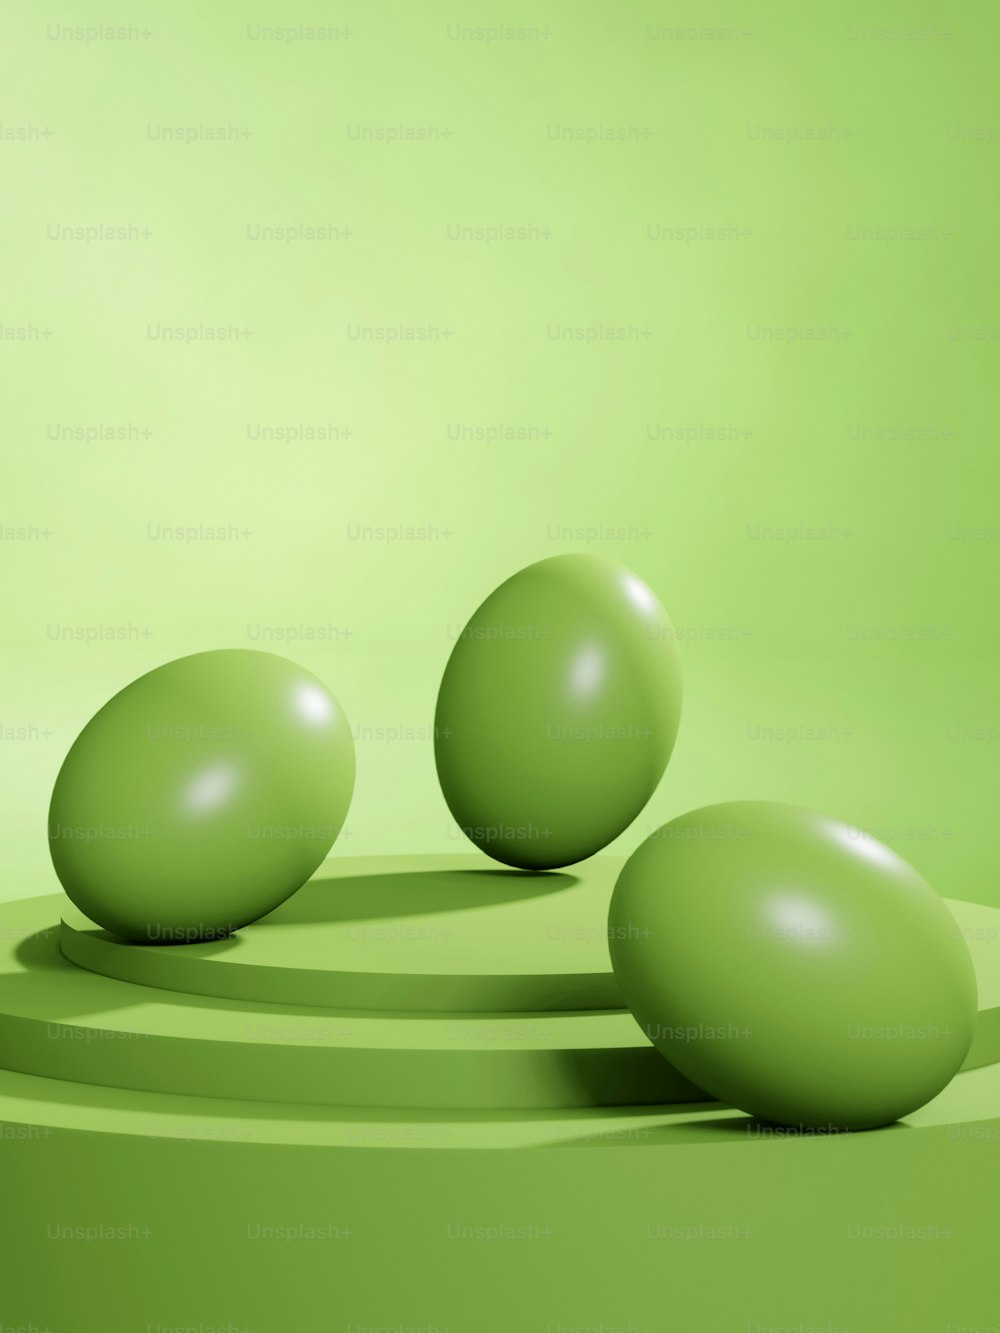 緑色の表面に3つの緑色のボール